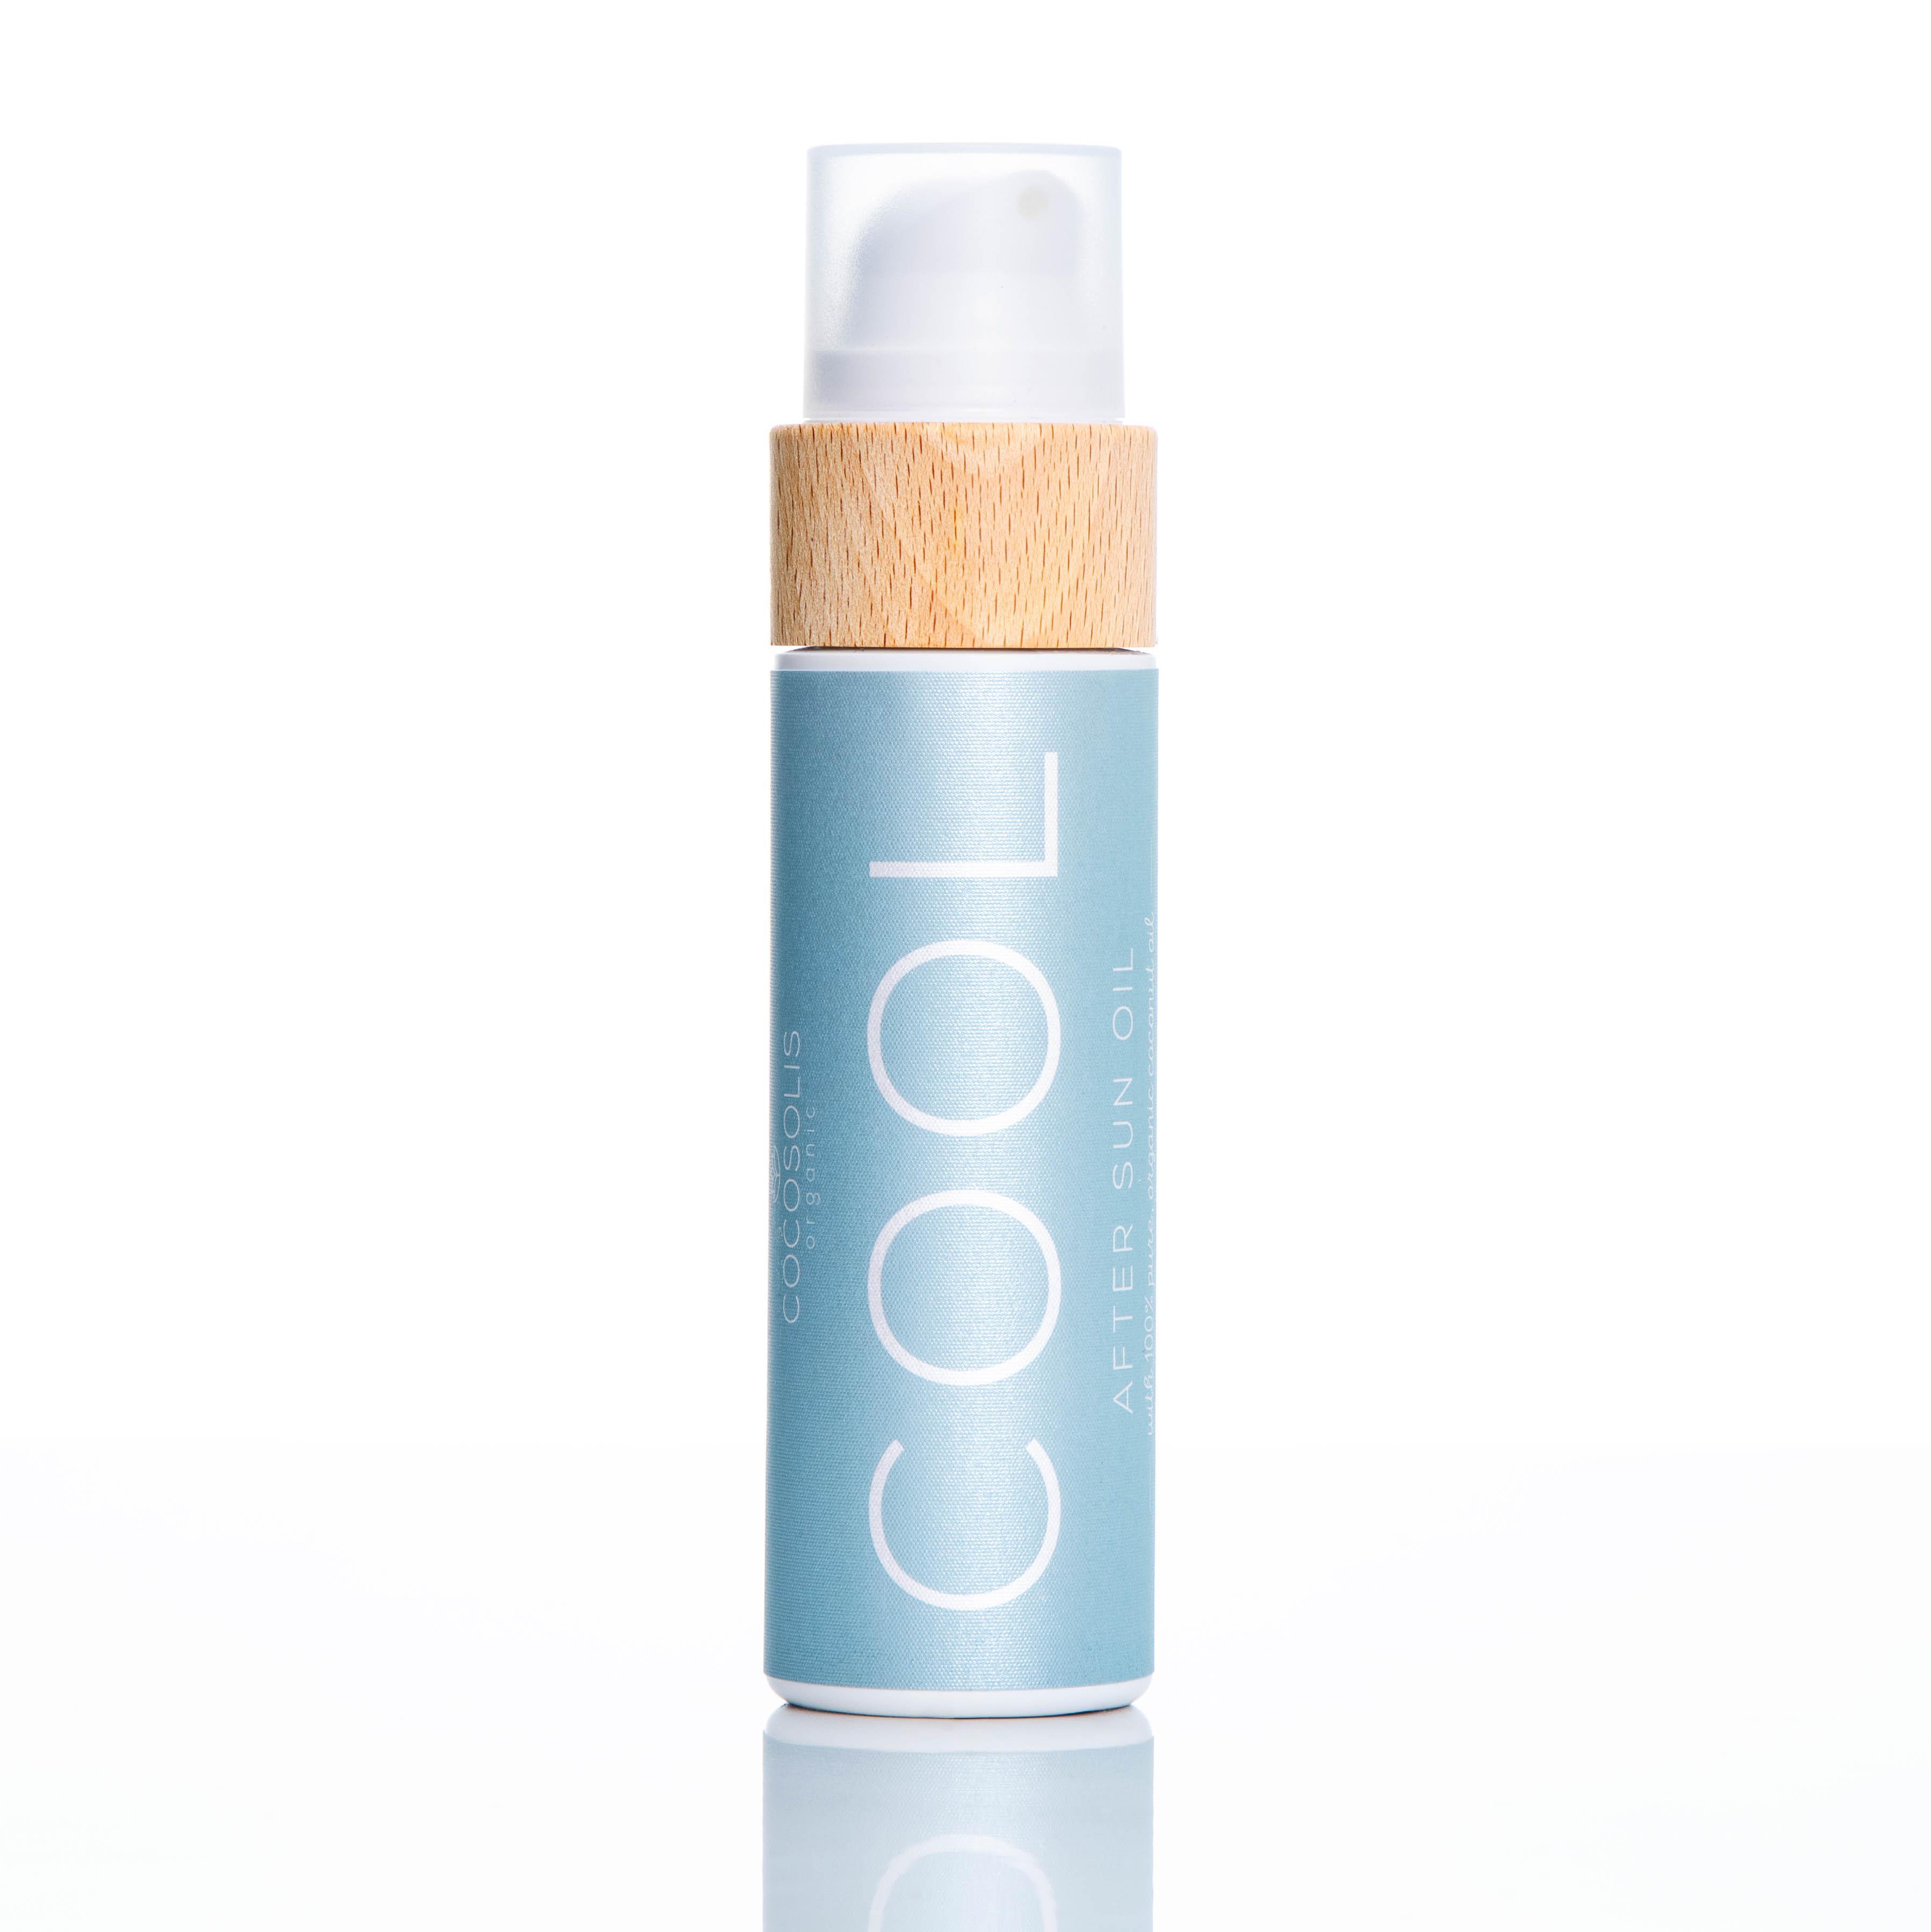 Cocosolis Cool After Sun Oil Био масло за нежна хидратация и възстановяване след слънце